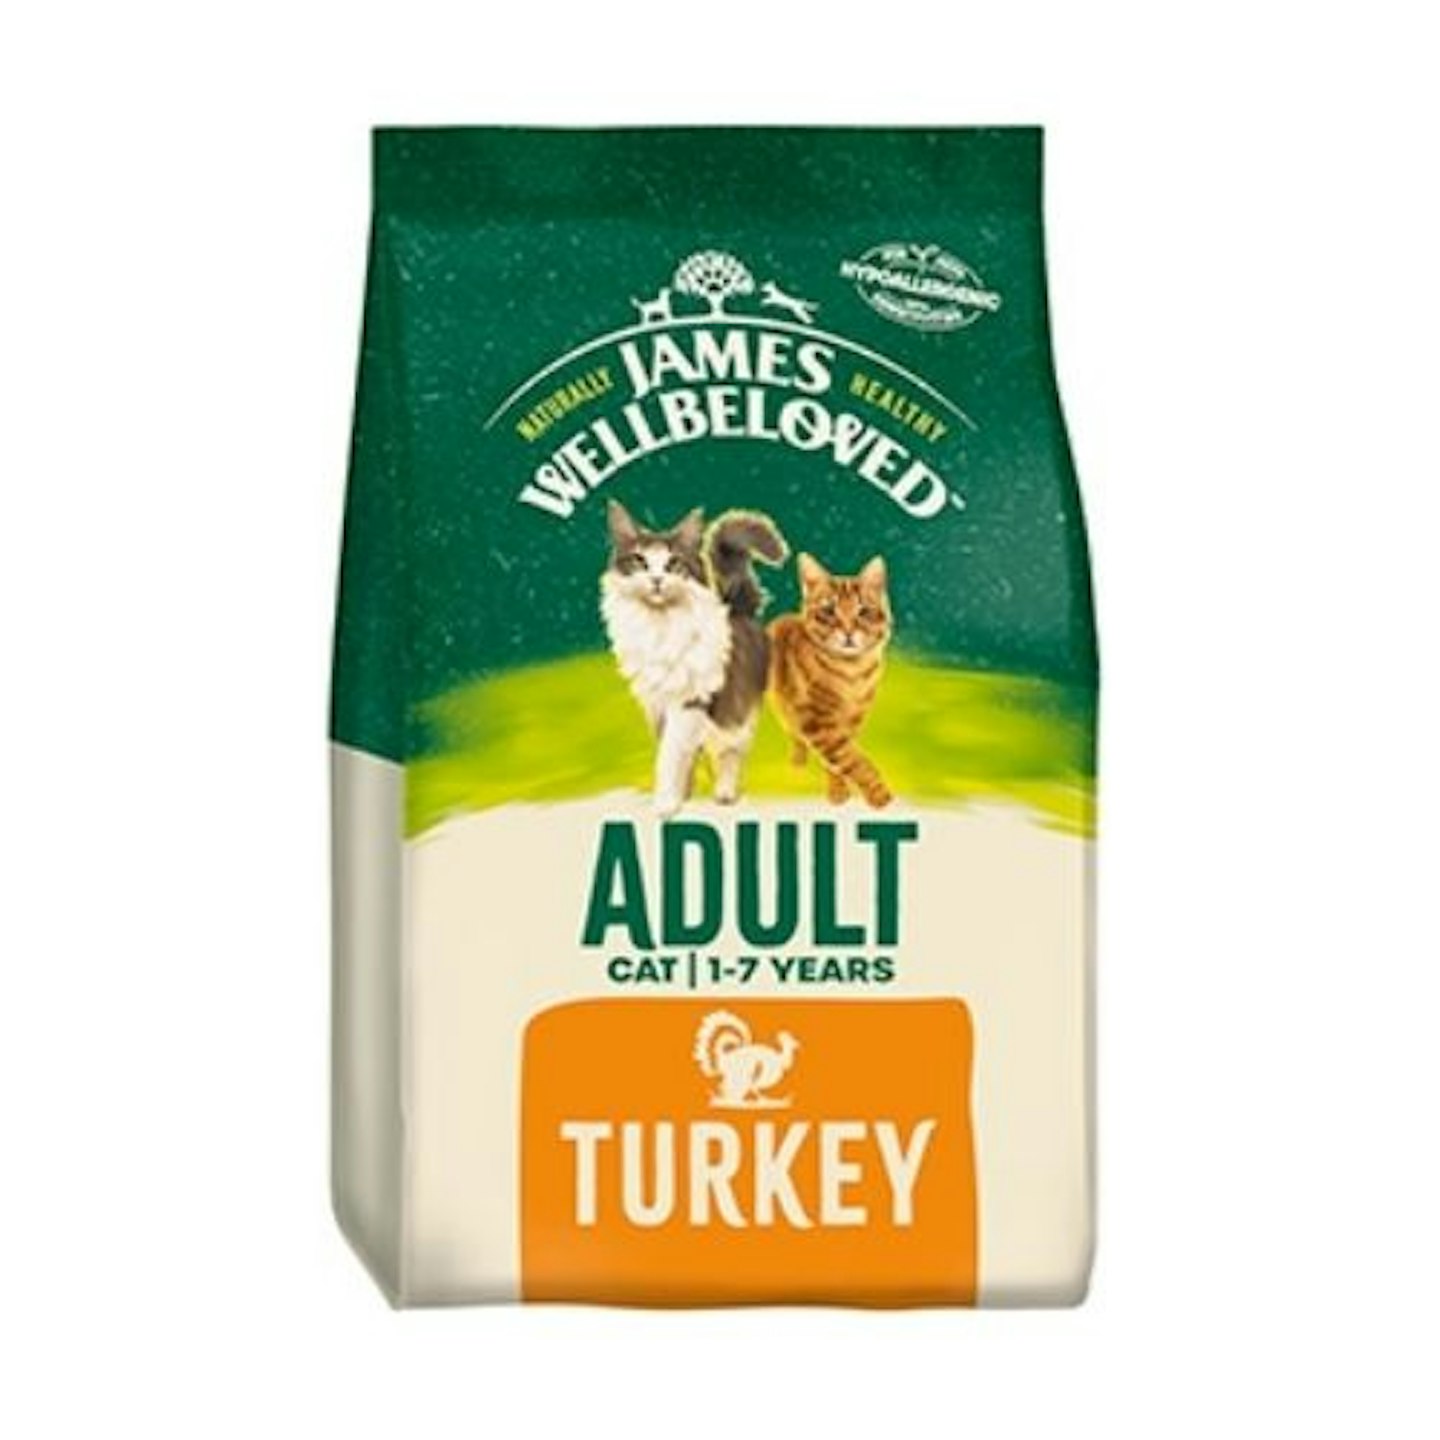 James Wellbeloved Dry Adult Cat Food